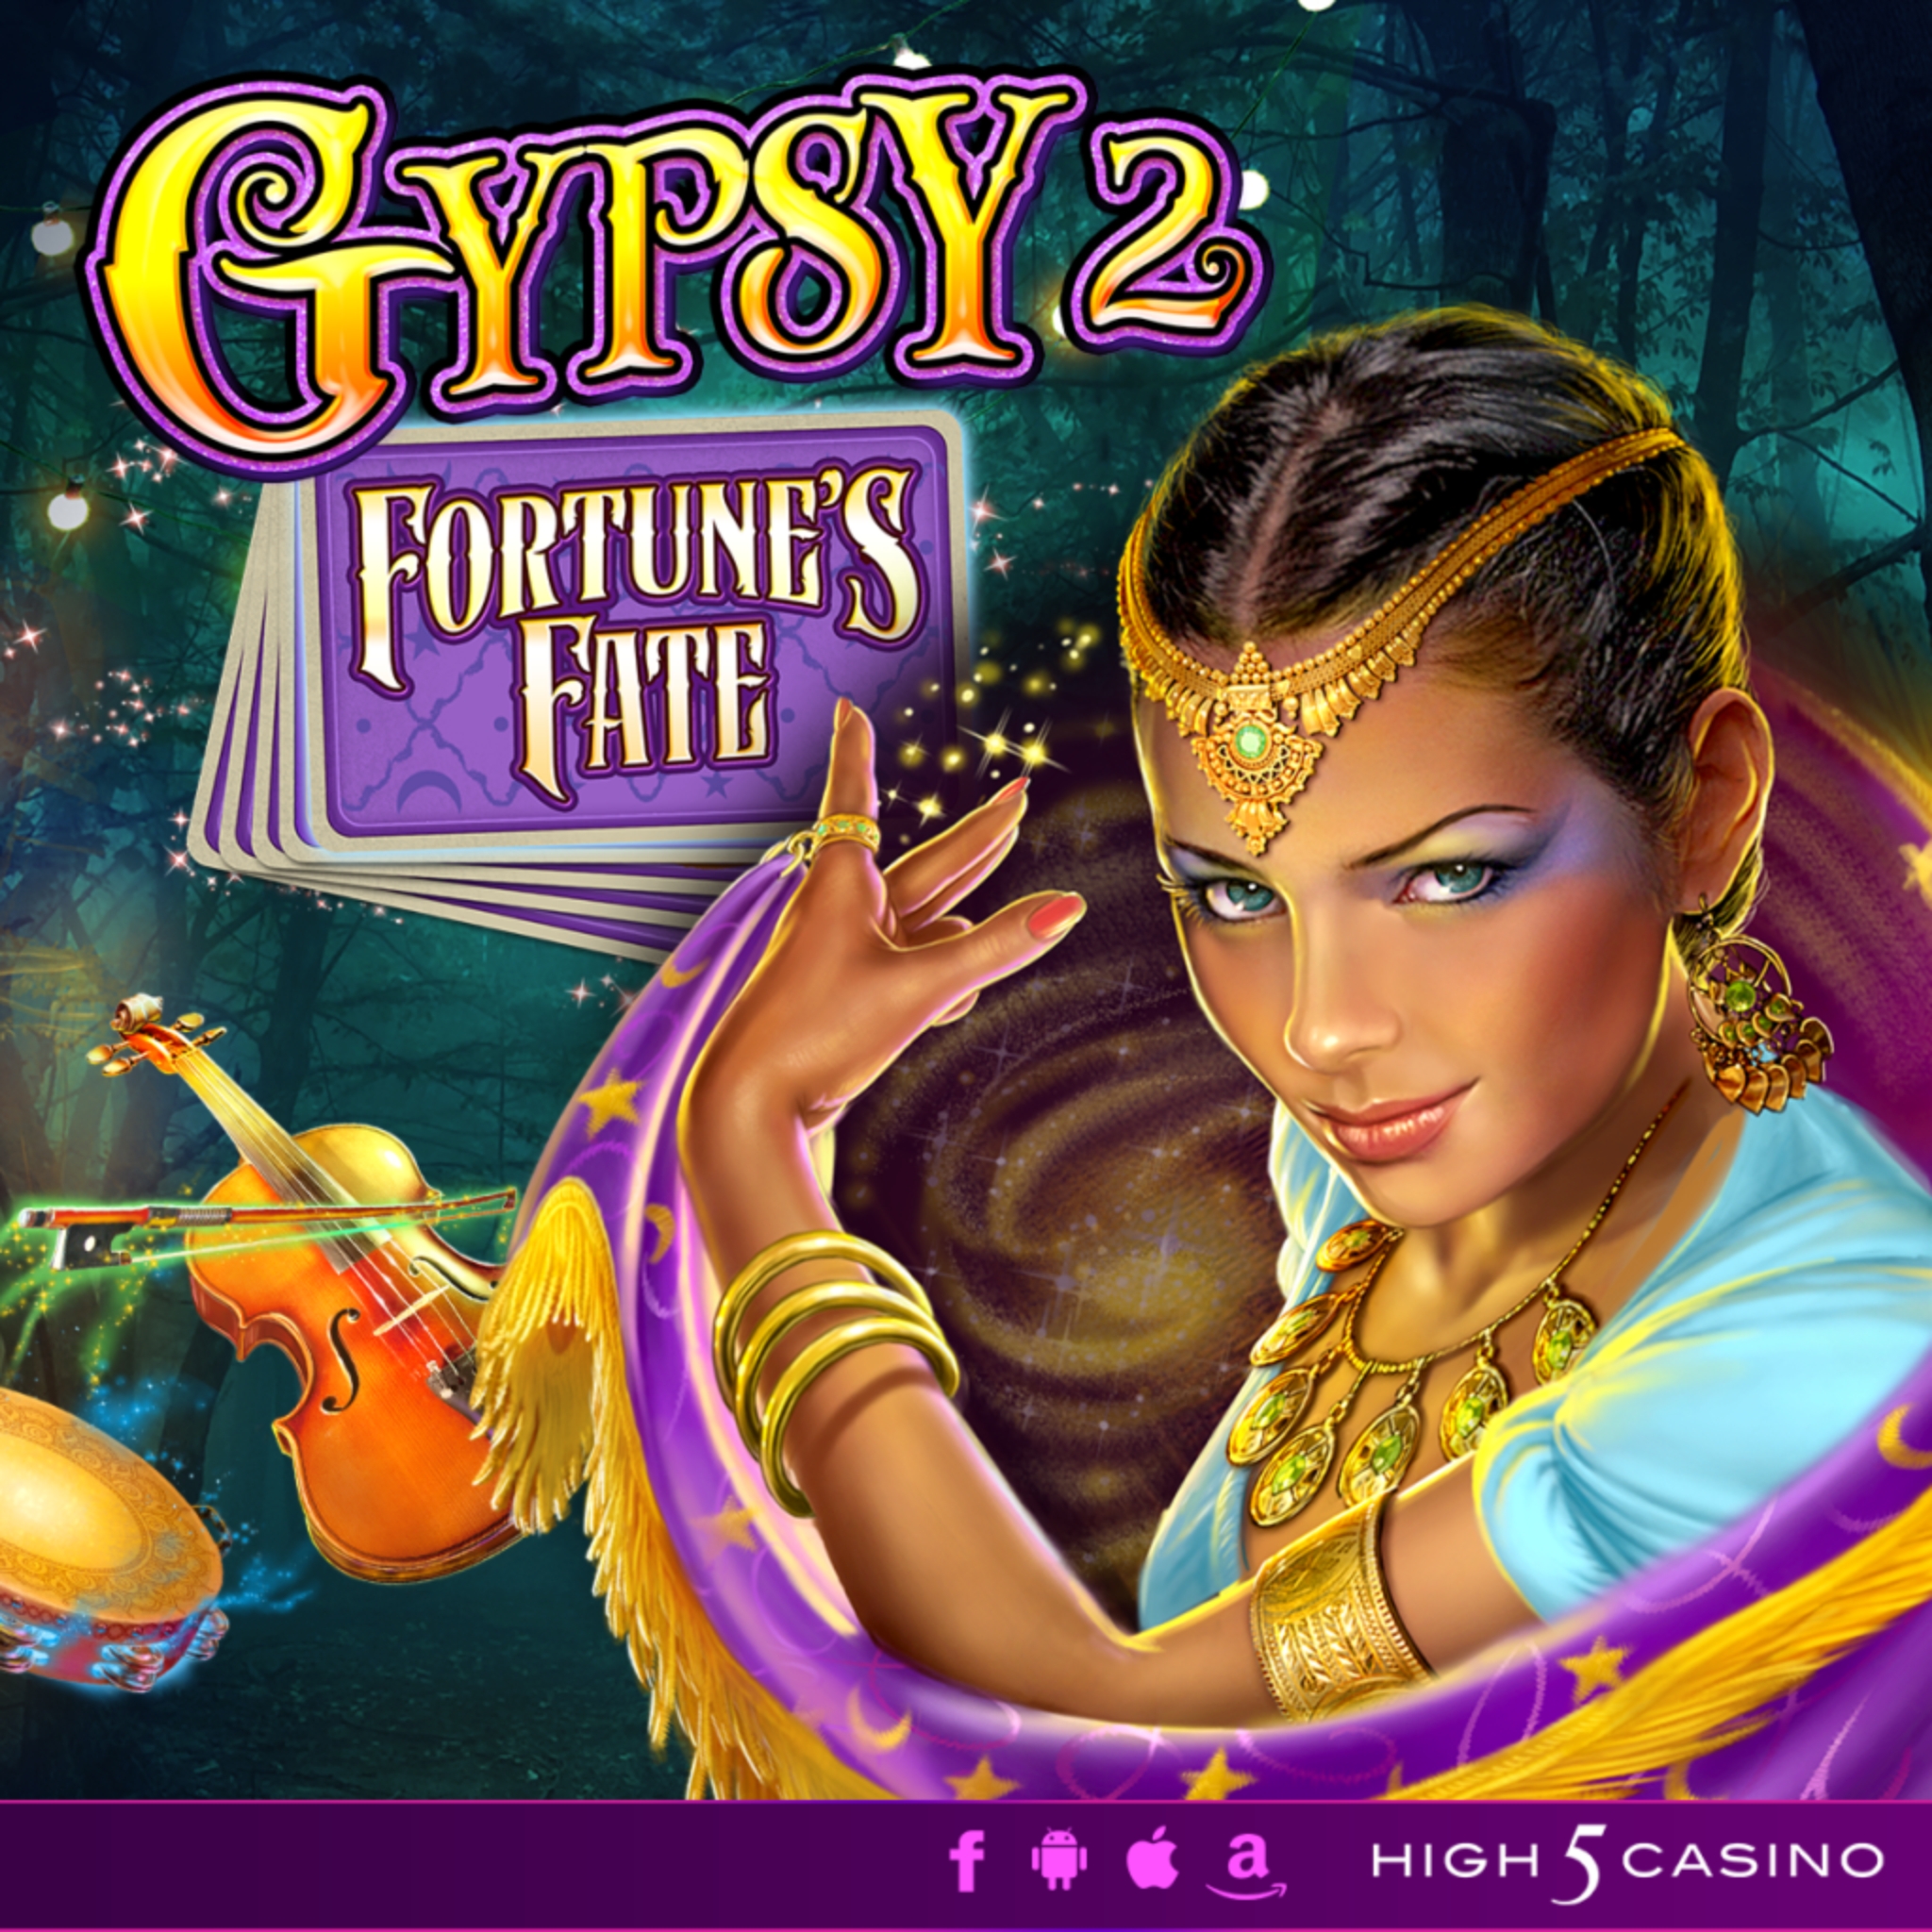 Gypsy 2: Fortunes Fate demo